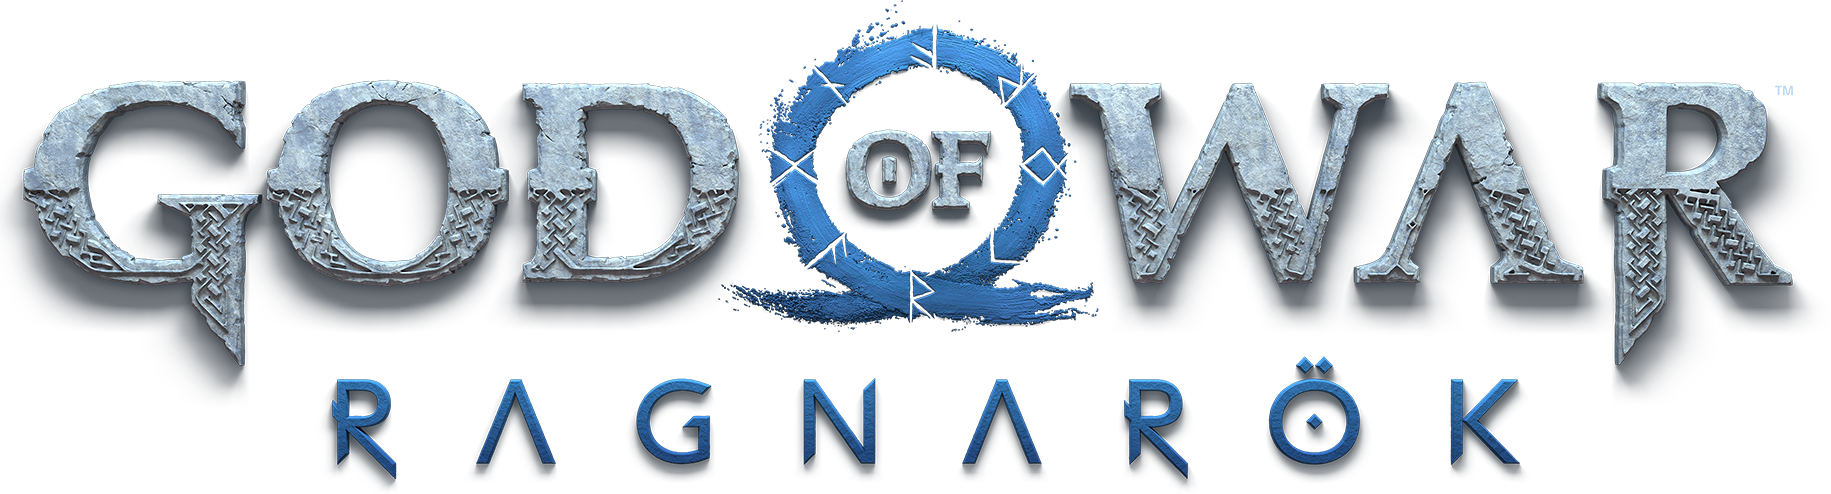 NYX Game Awards - God of War Ragnarök